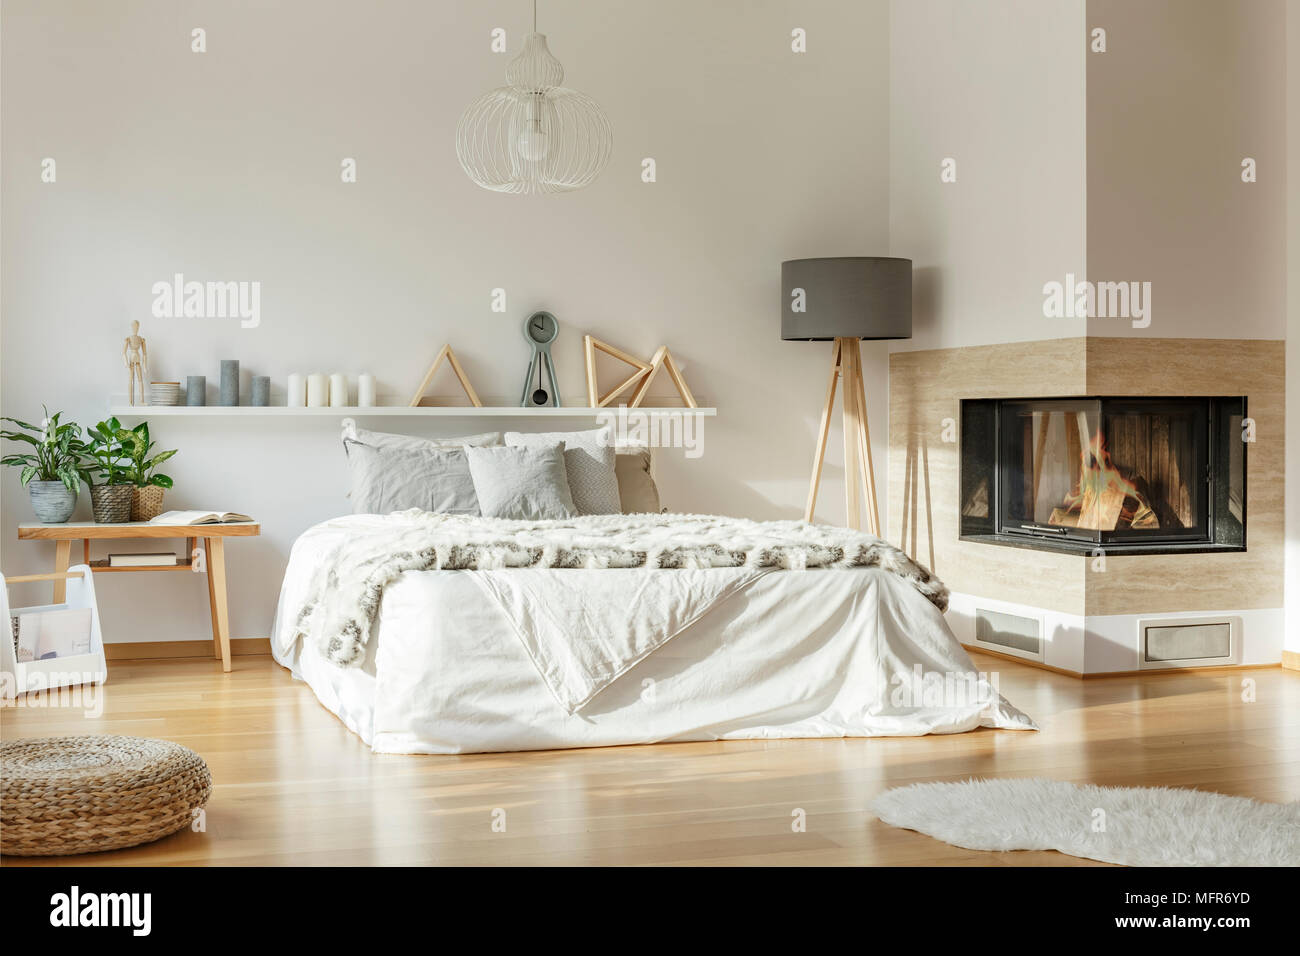 Interior espacioso dormitorio con chimenea, cama grande, una lámpara, una  alfombra y ornamentos Fotografía de stock - Alamy